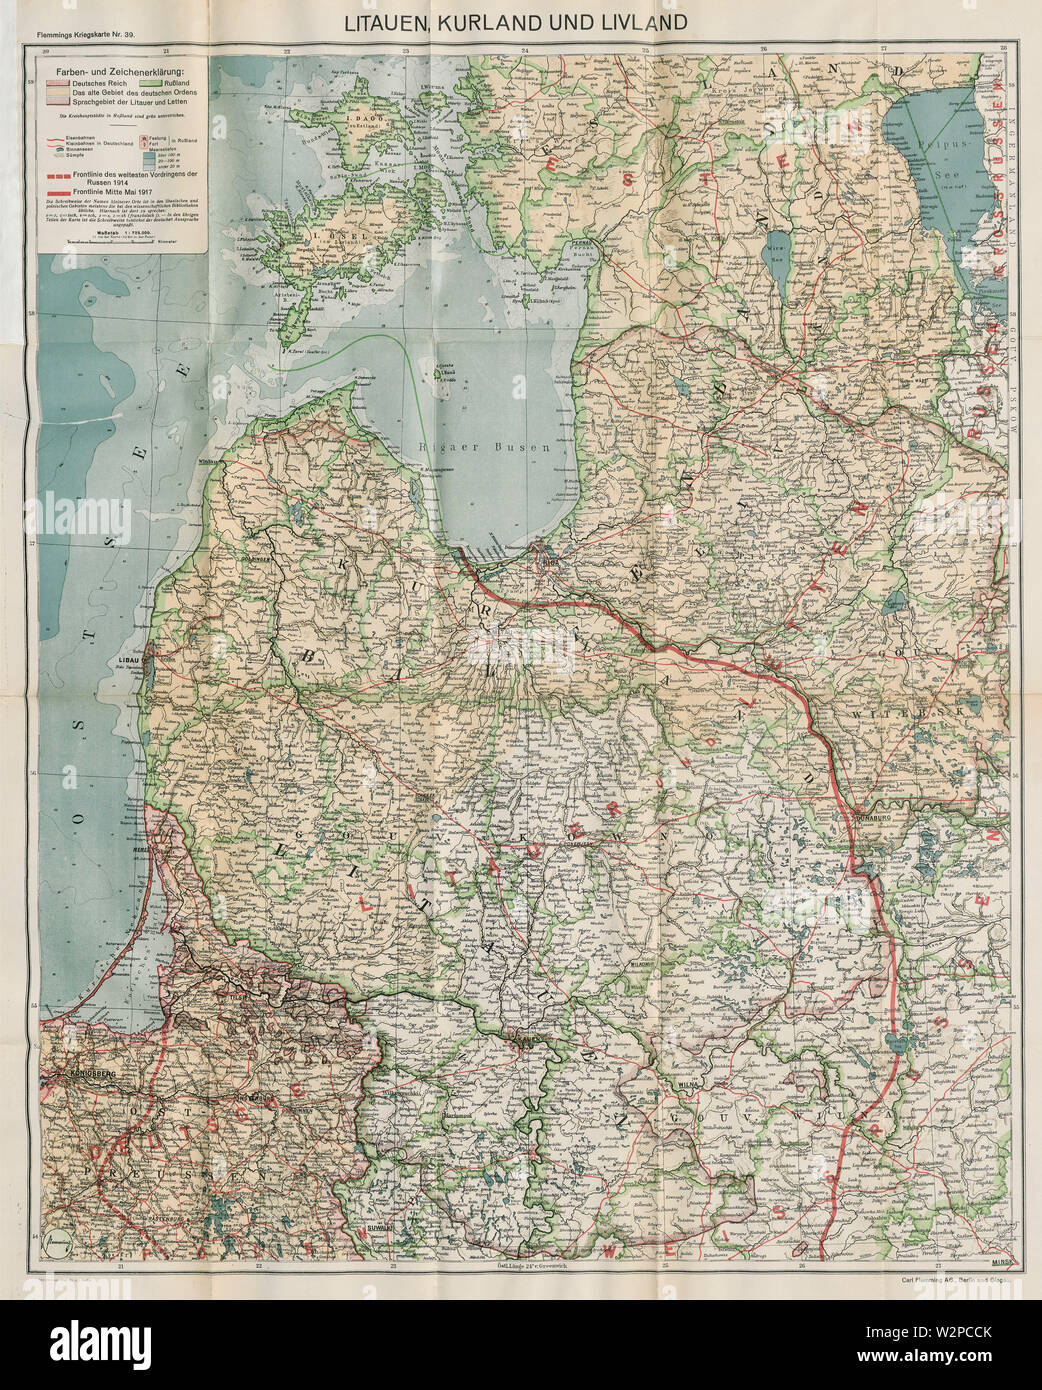 39-Litauen, Kurland und Livland (1917) Stock Photo